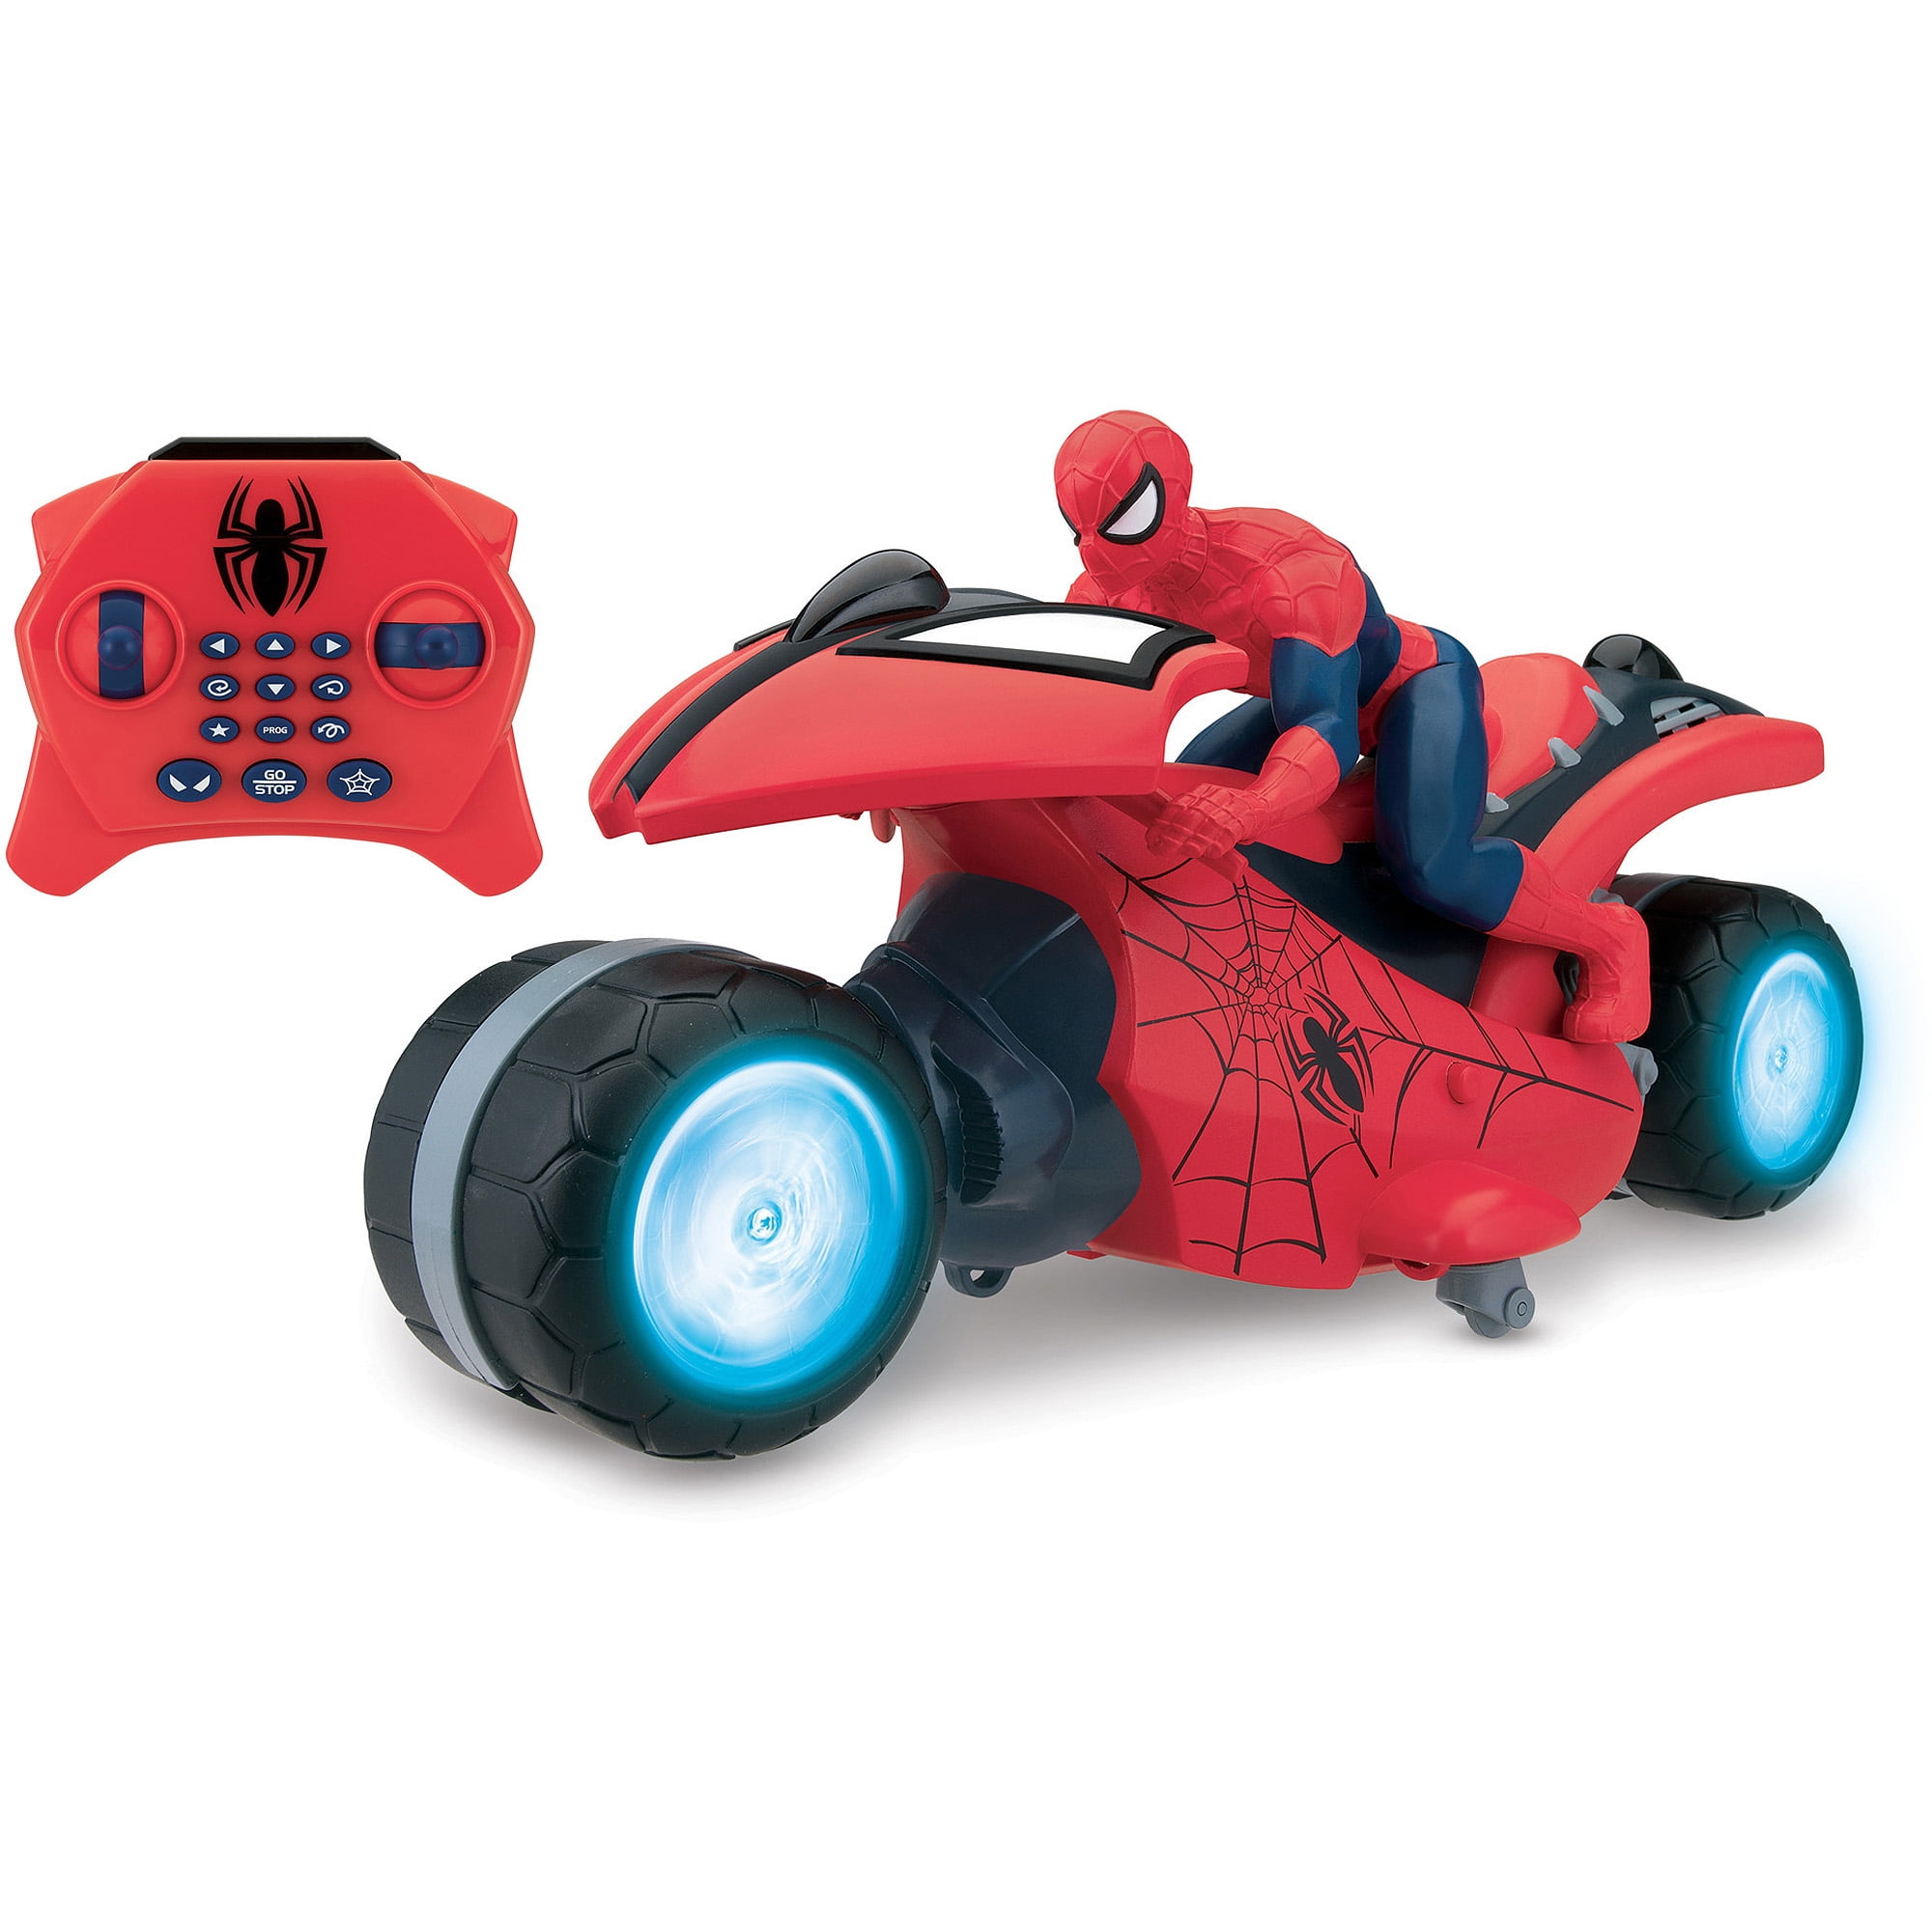 Spiderman Moto Bike Remote Control